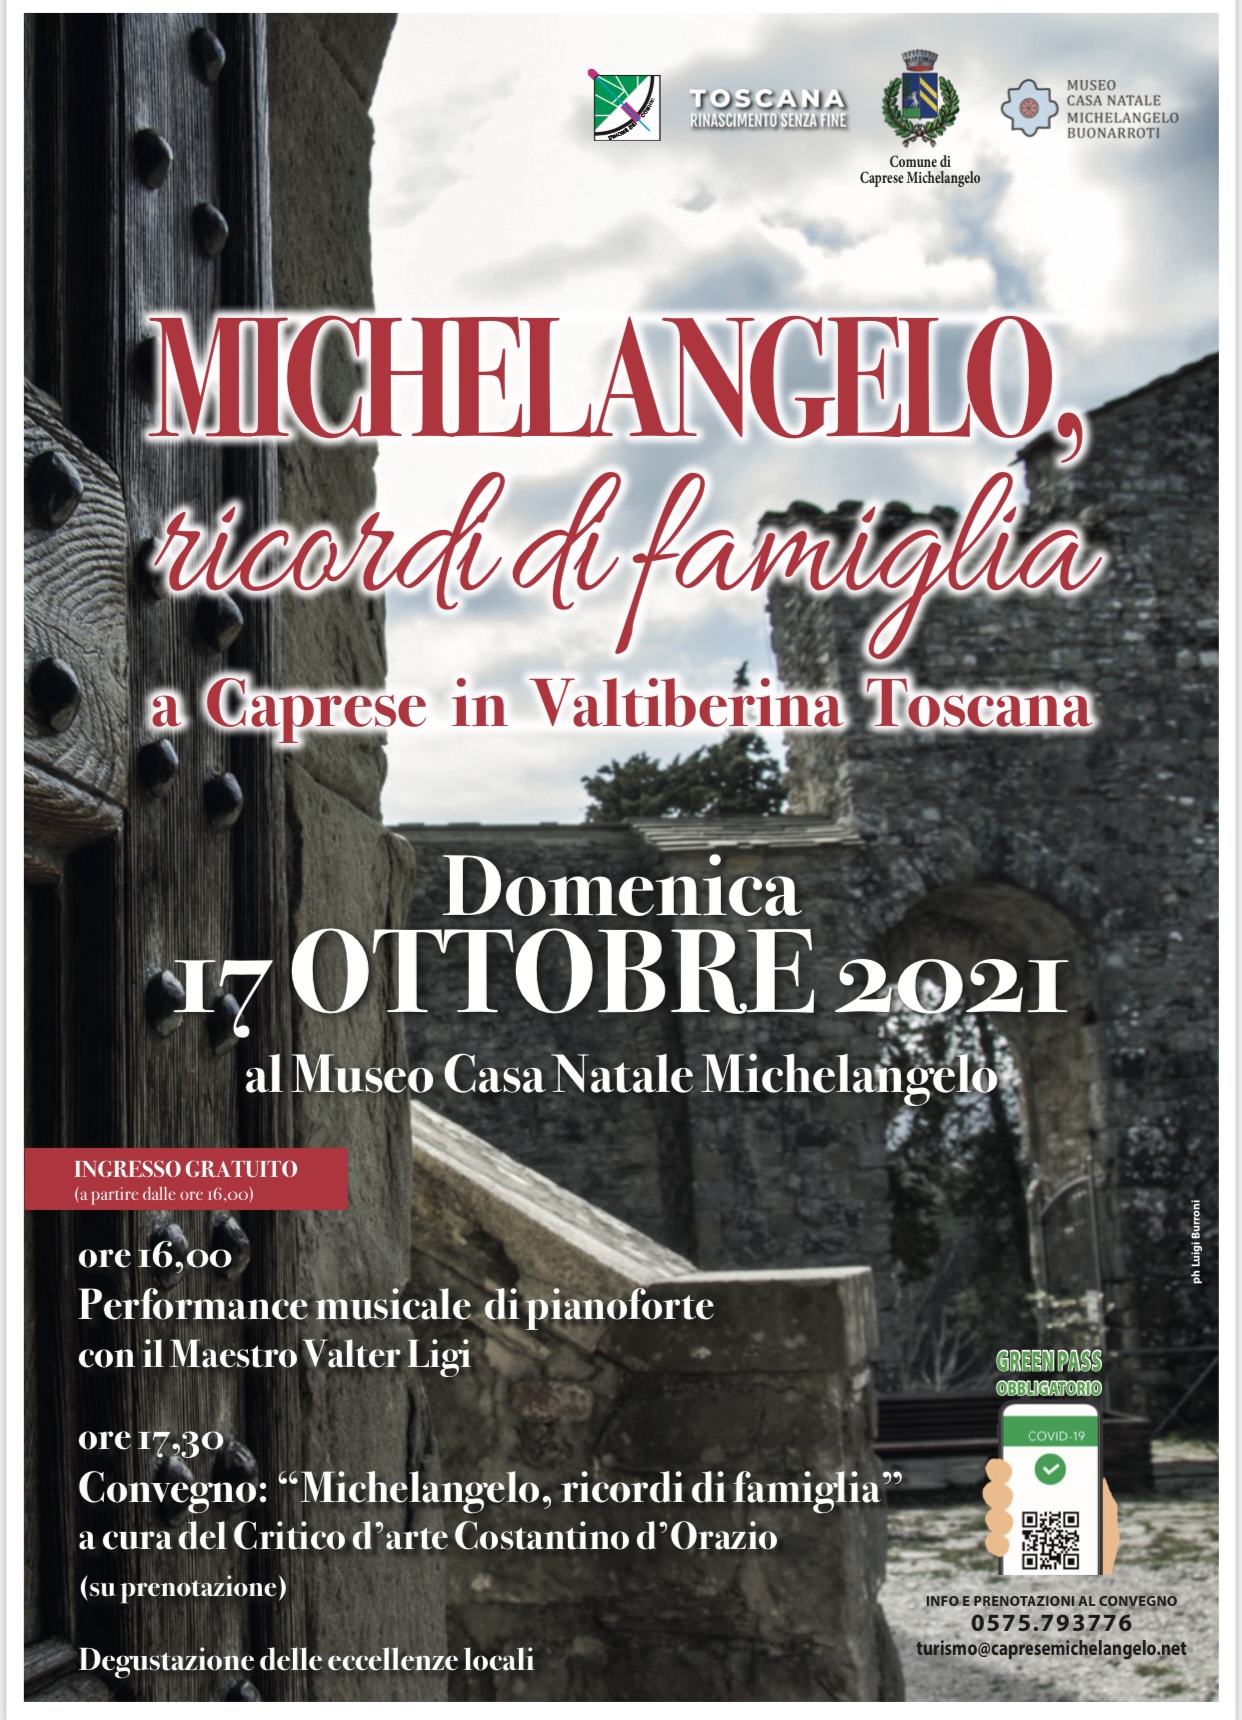 Caprese Michelangelo: nel week-end della Festa della Castagna spazio ad un evento in onore a Buonarroti